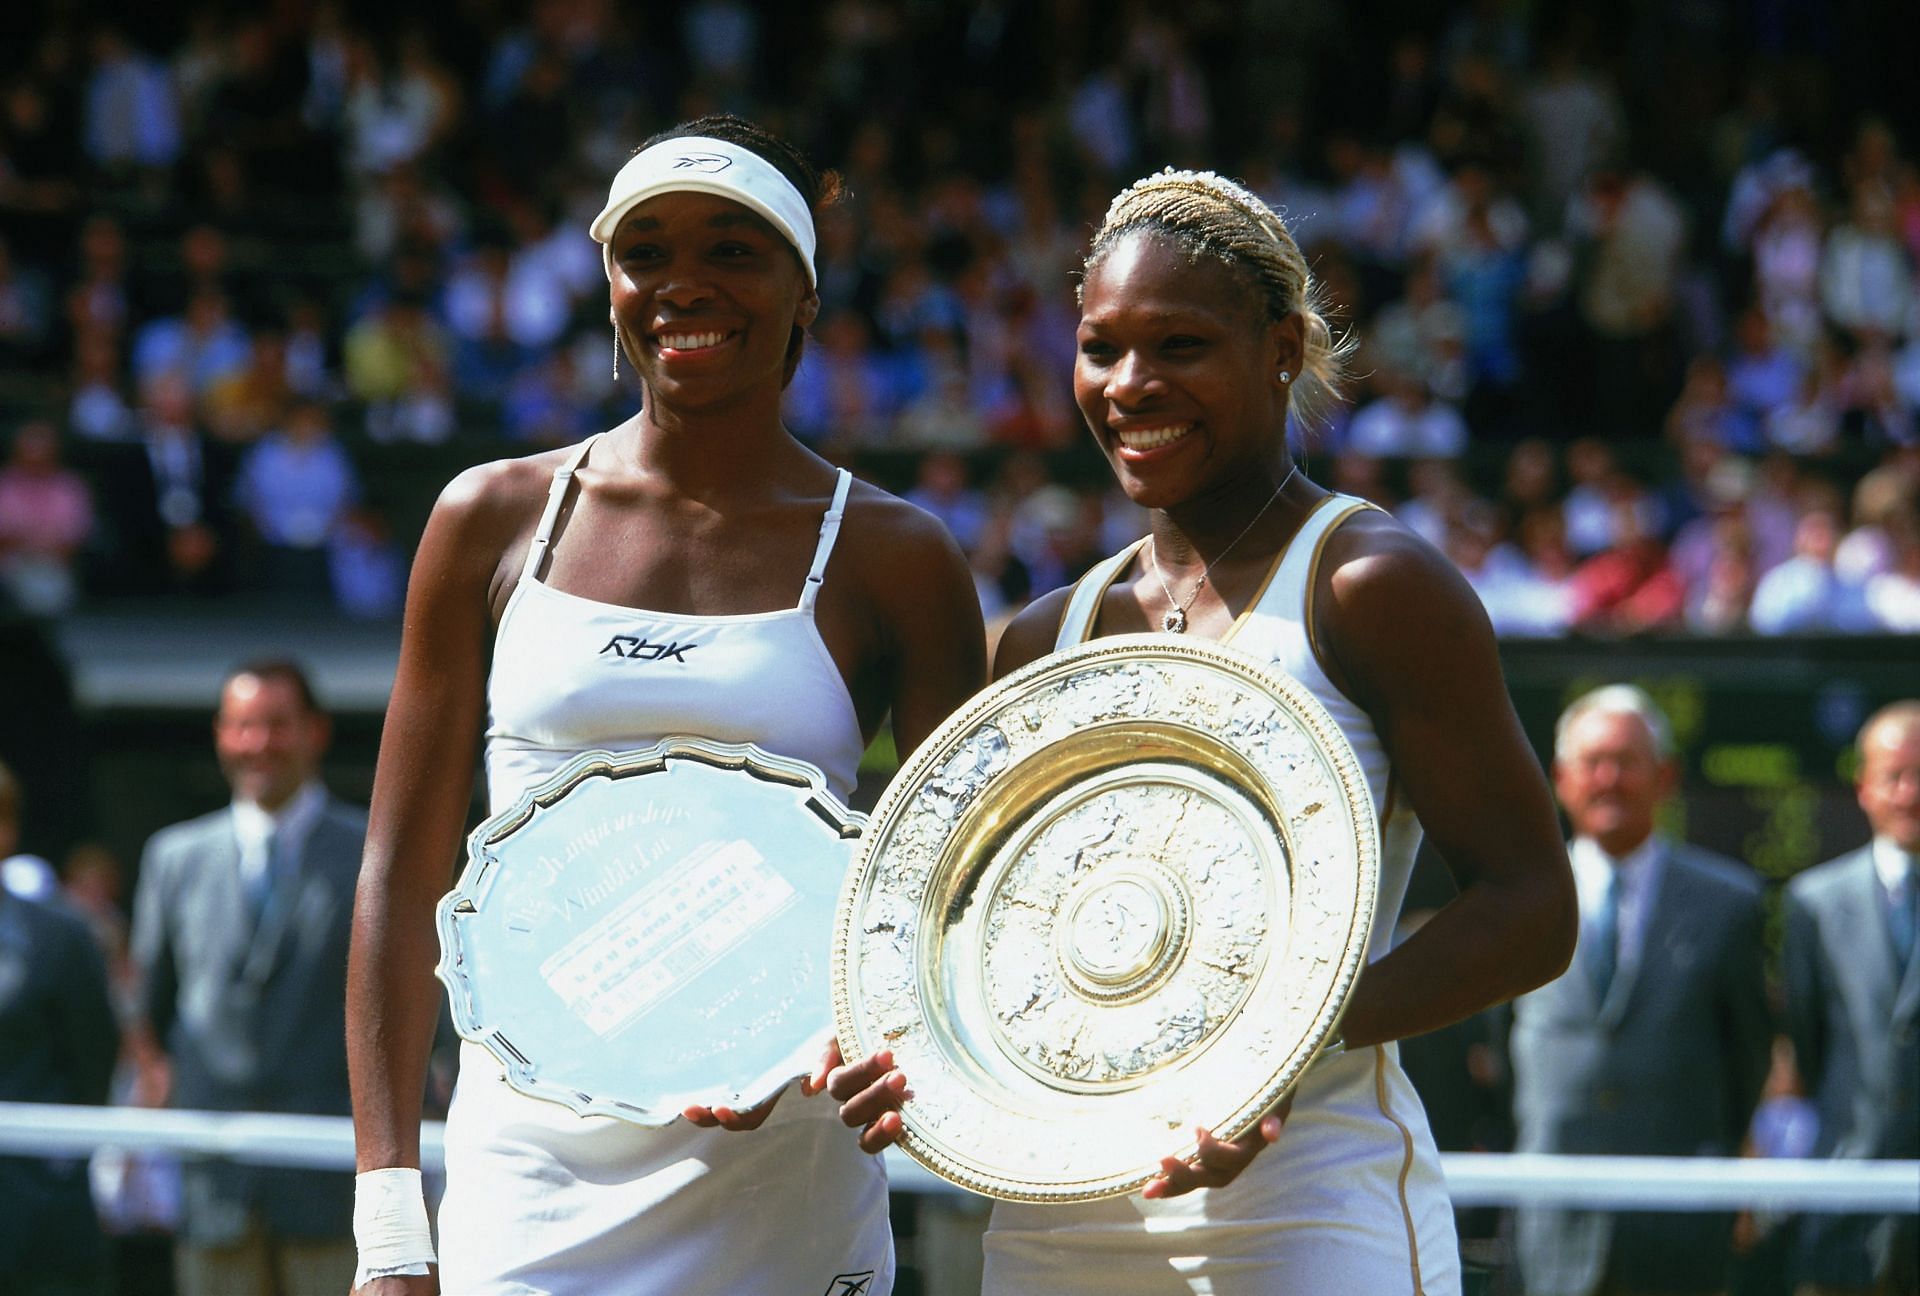 Nhà vô địch Wimbledon nữ Serena Williams (phải) của Hoa Kỳ chụp ảnh với chiếc cúp cùng với á quân và em gái Venus Williams của Hoa Kỳ